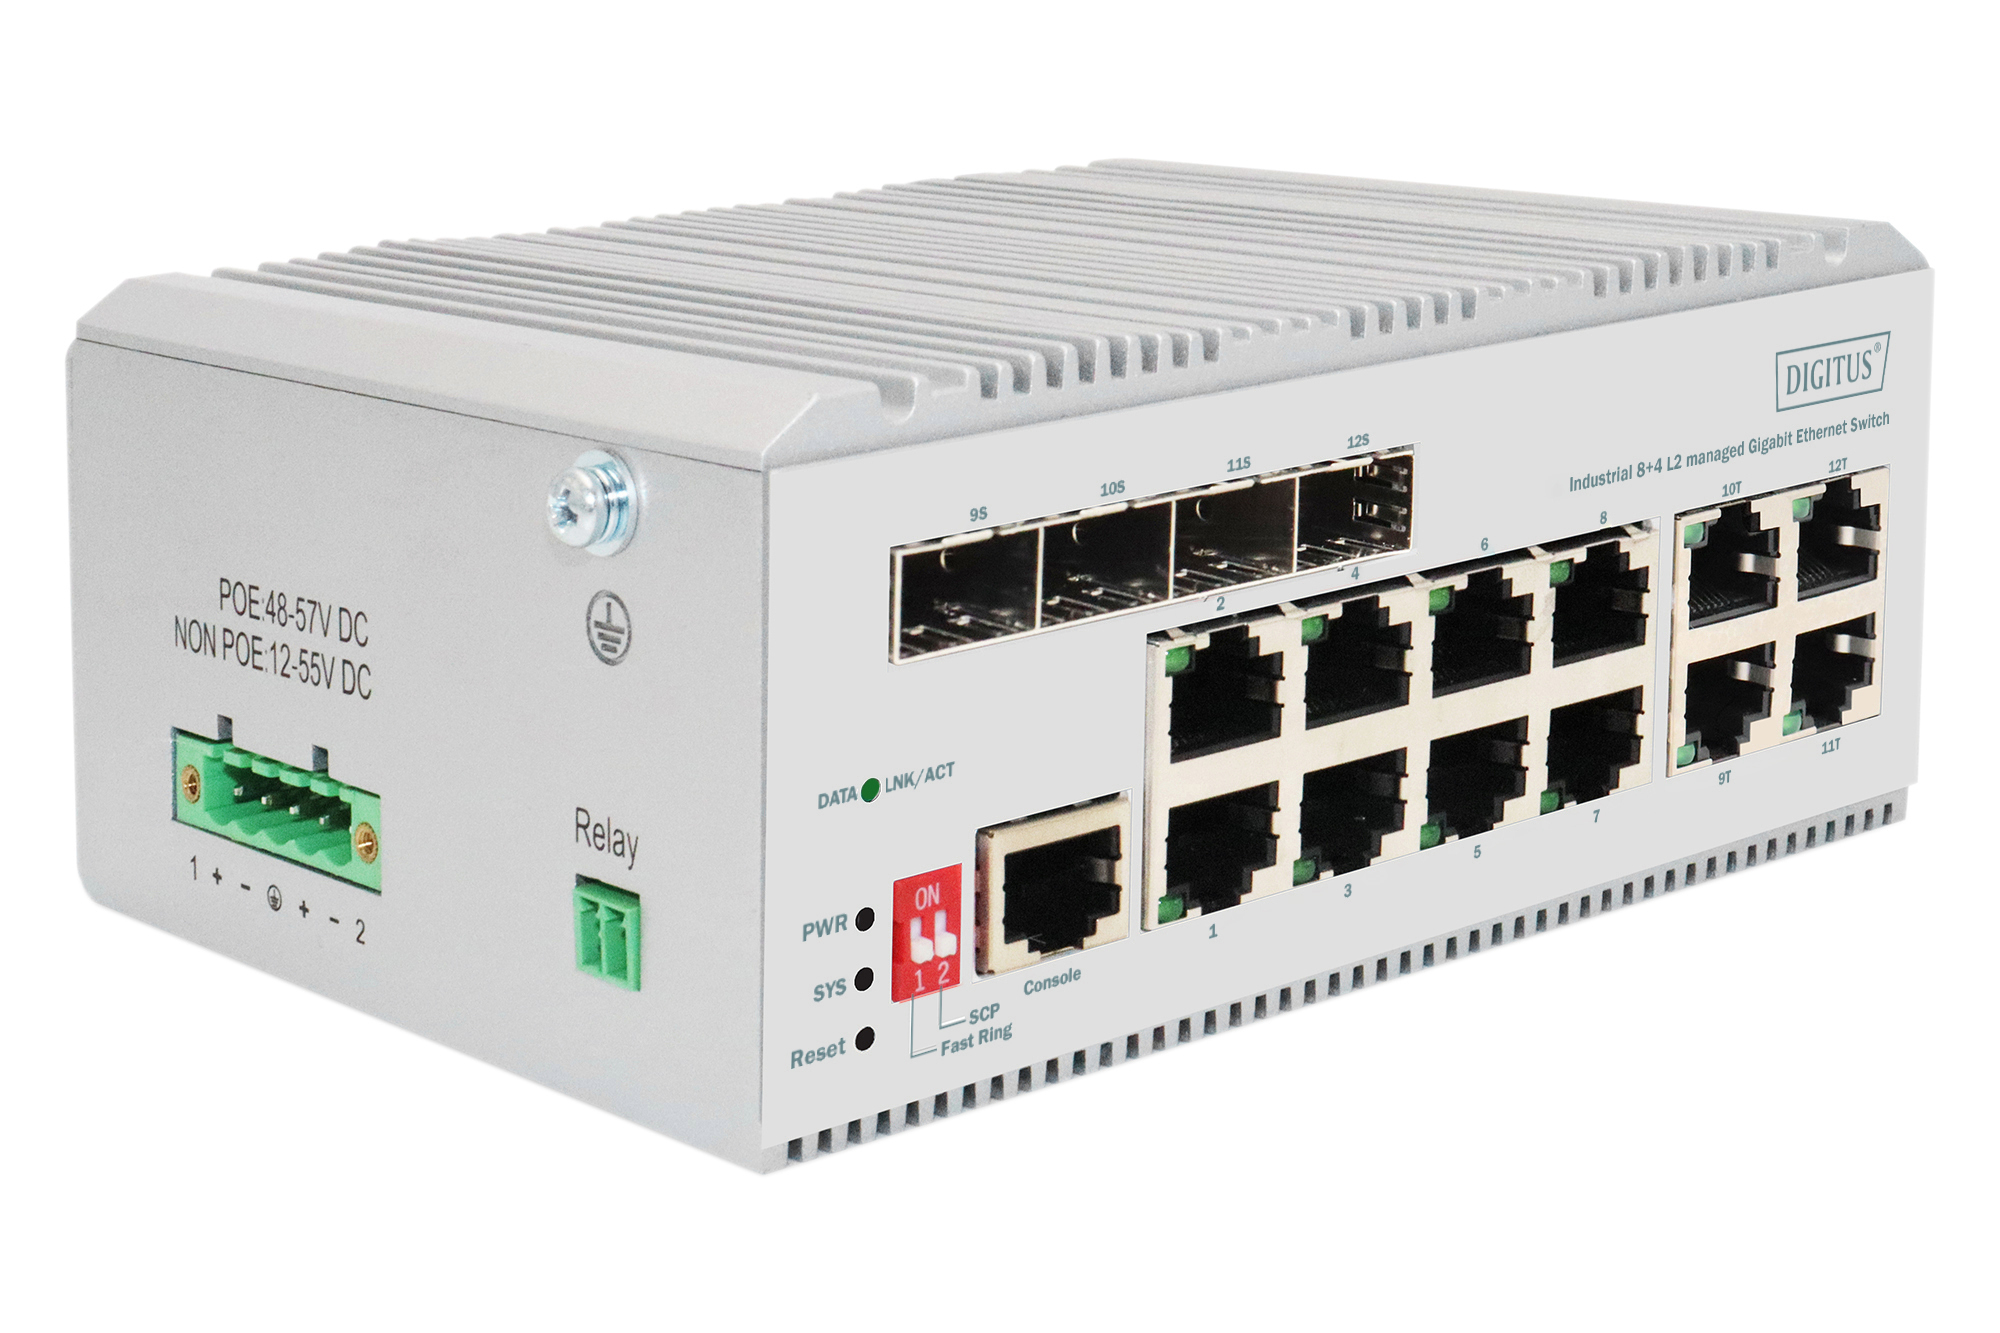 DIGITUS DN-651145 8 Port Gigabit Ethernet Netzwerk Switch, Industrial, L2 managed, 4 SFP Uplink